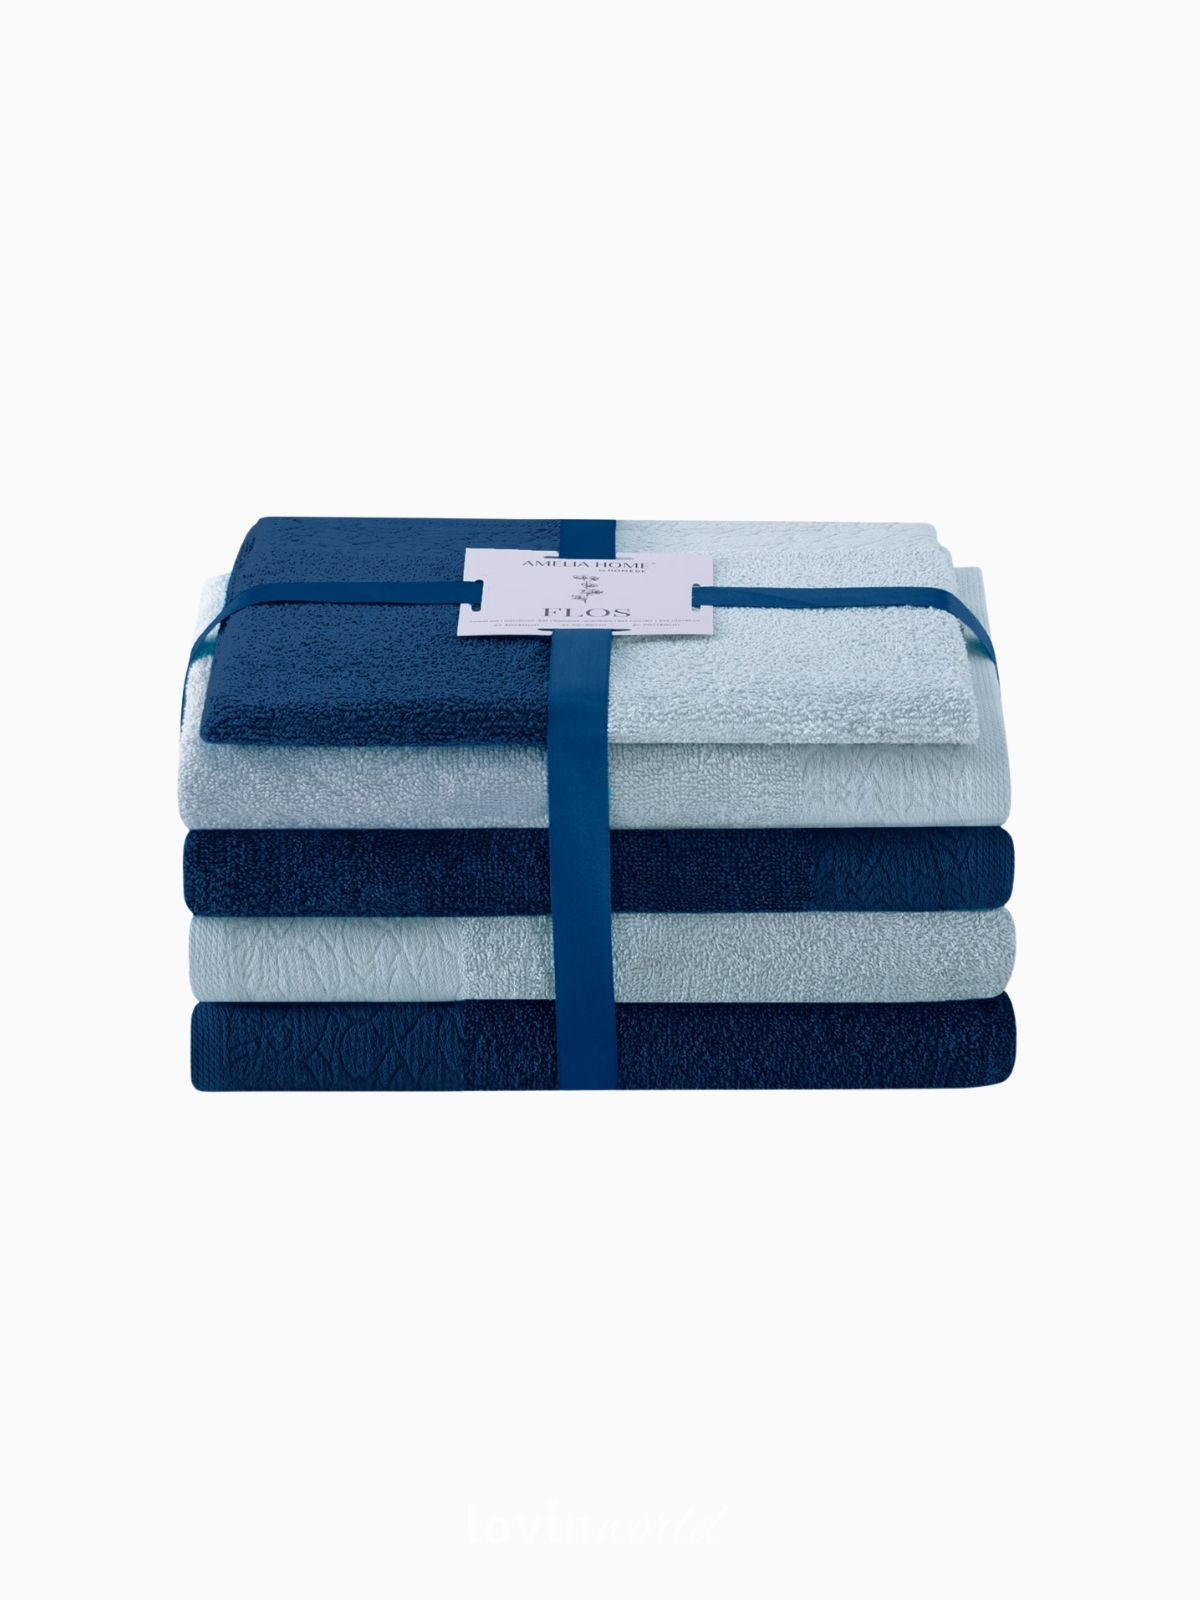 Set 6 Asciugamani da bagno Flos in 100% cotone, colore blu e celeste-1